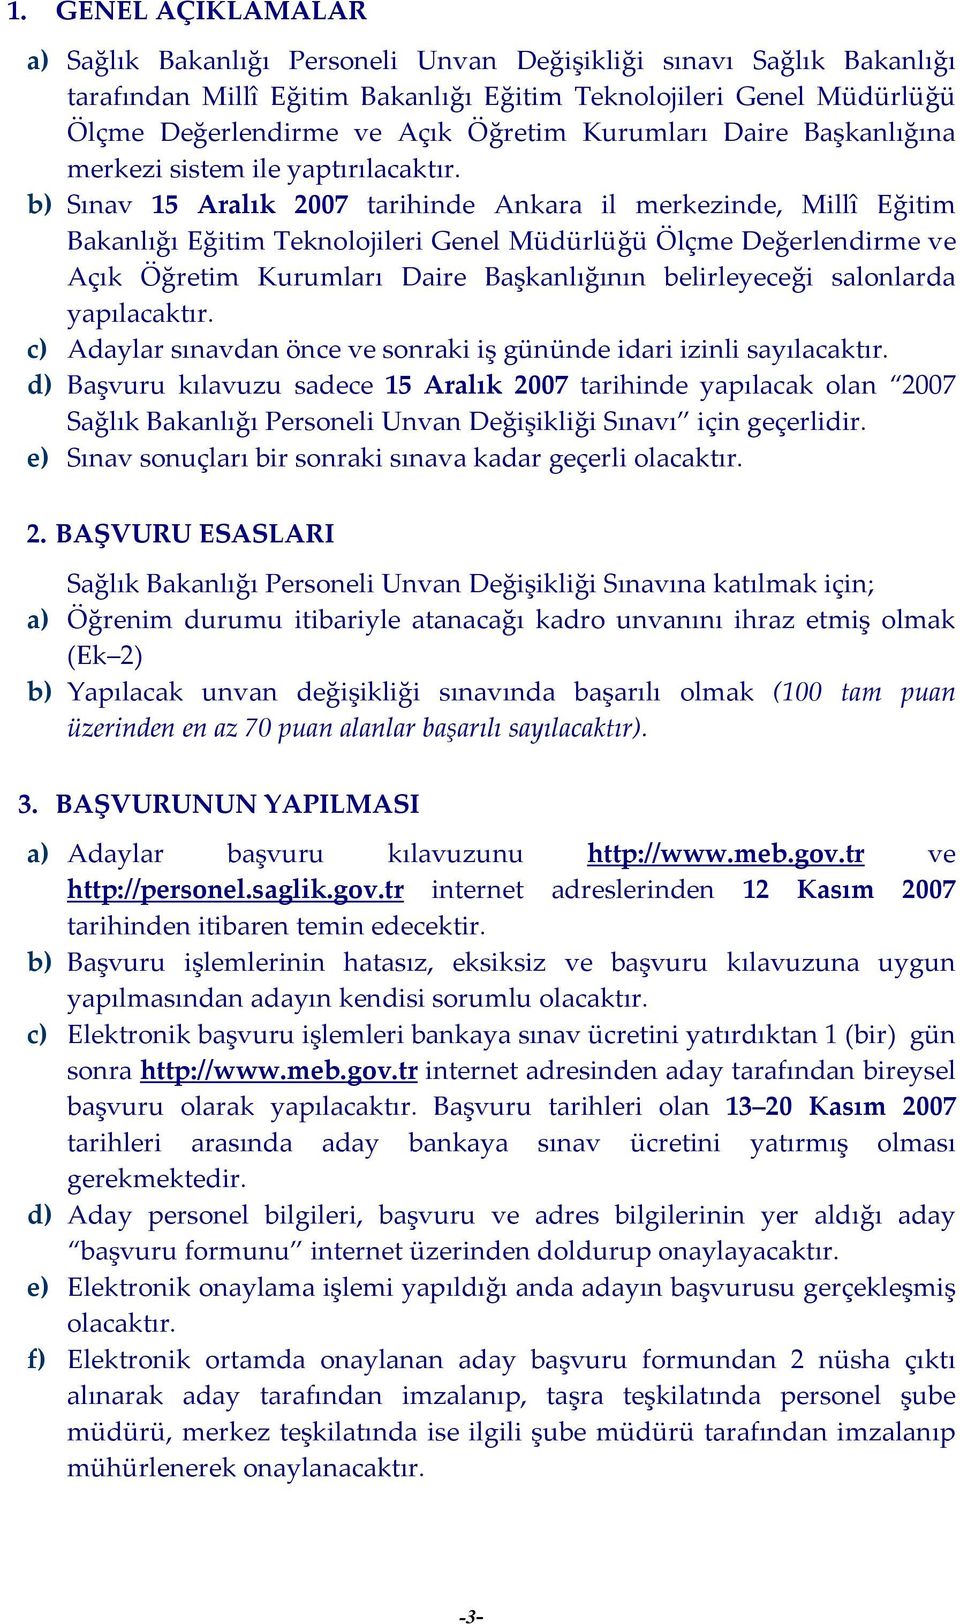 b) Sınav 15 Aralık 2007 tarihinde Ankara il merkezinde, Millî Eğitim Bakanlığı Eğitim Teknolojileri Genel Müdürlüğü Ölçme Değerlendirme ve Açık Öğretim Kurumları Daire Başkanlığının belirleyeceği